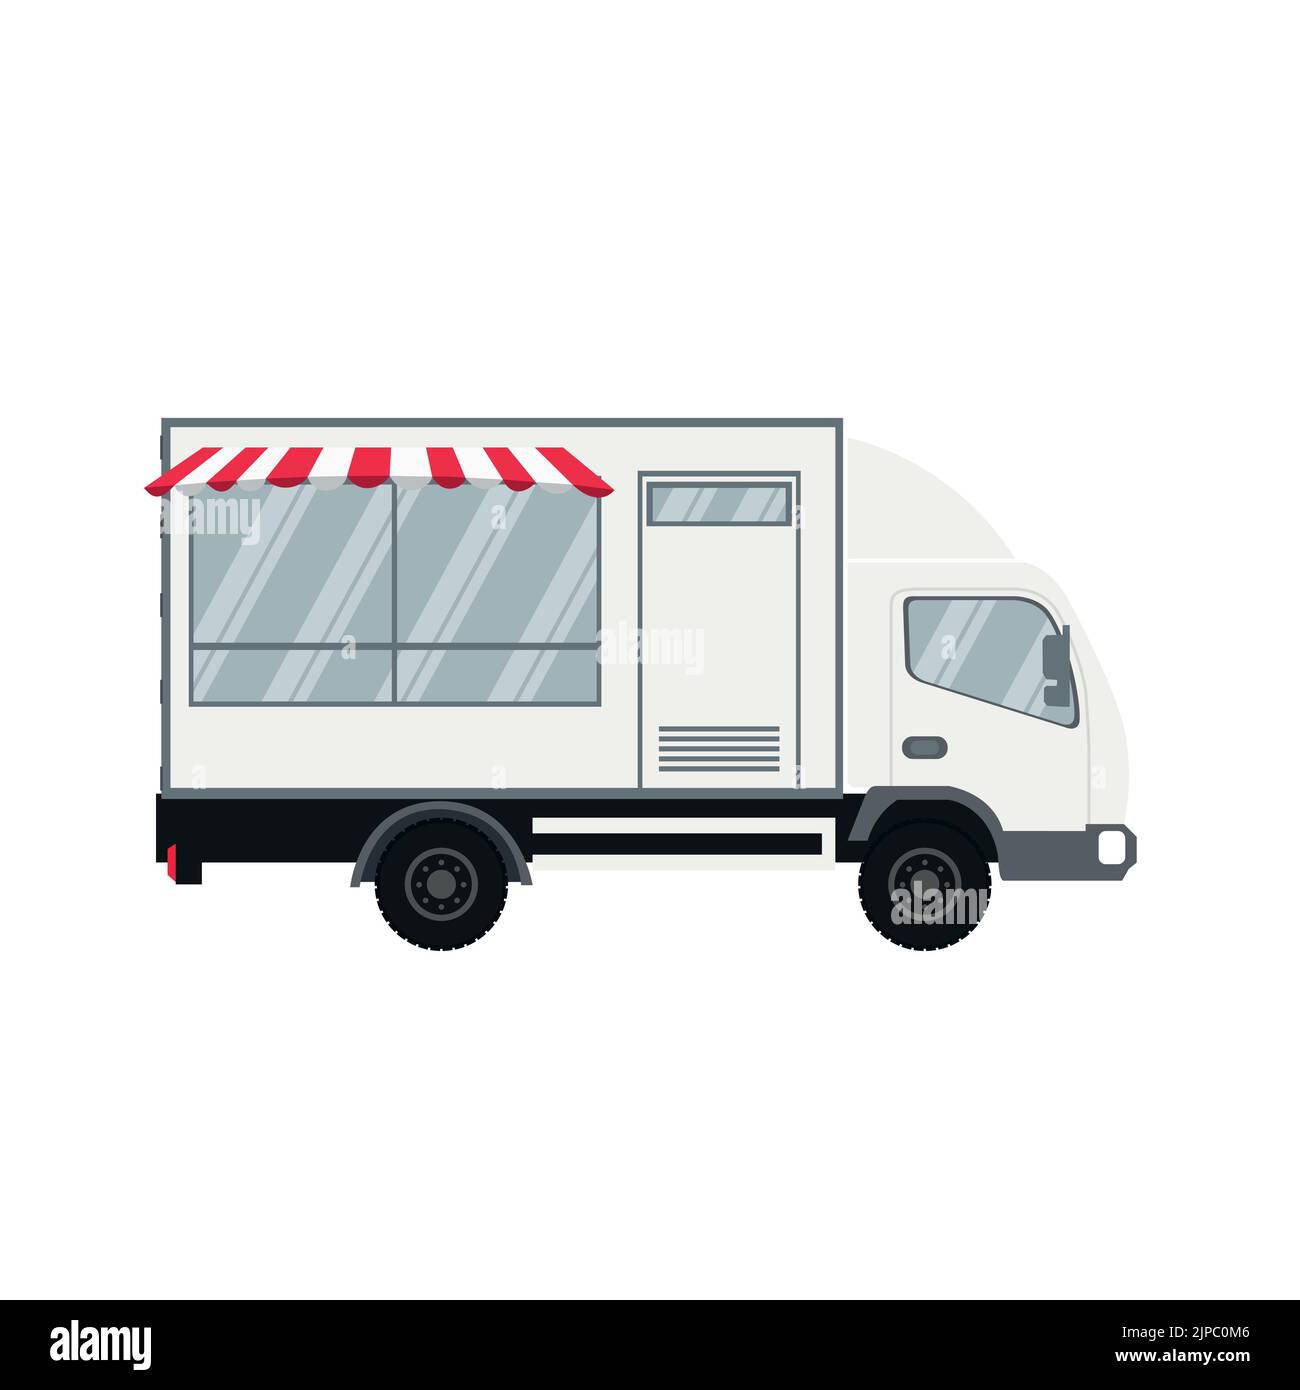 Vector design of modern food truck Stock Vector